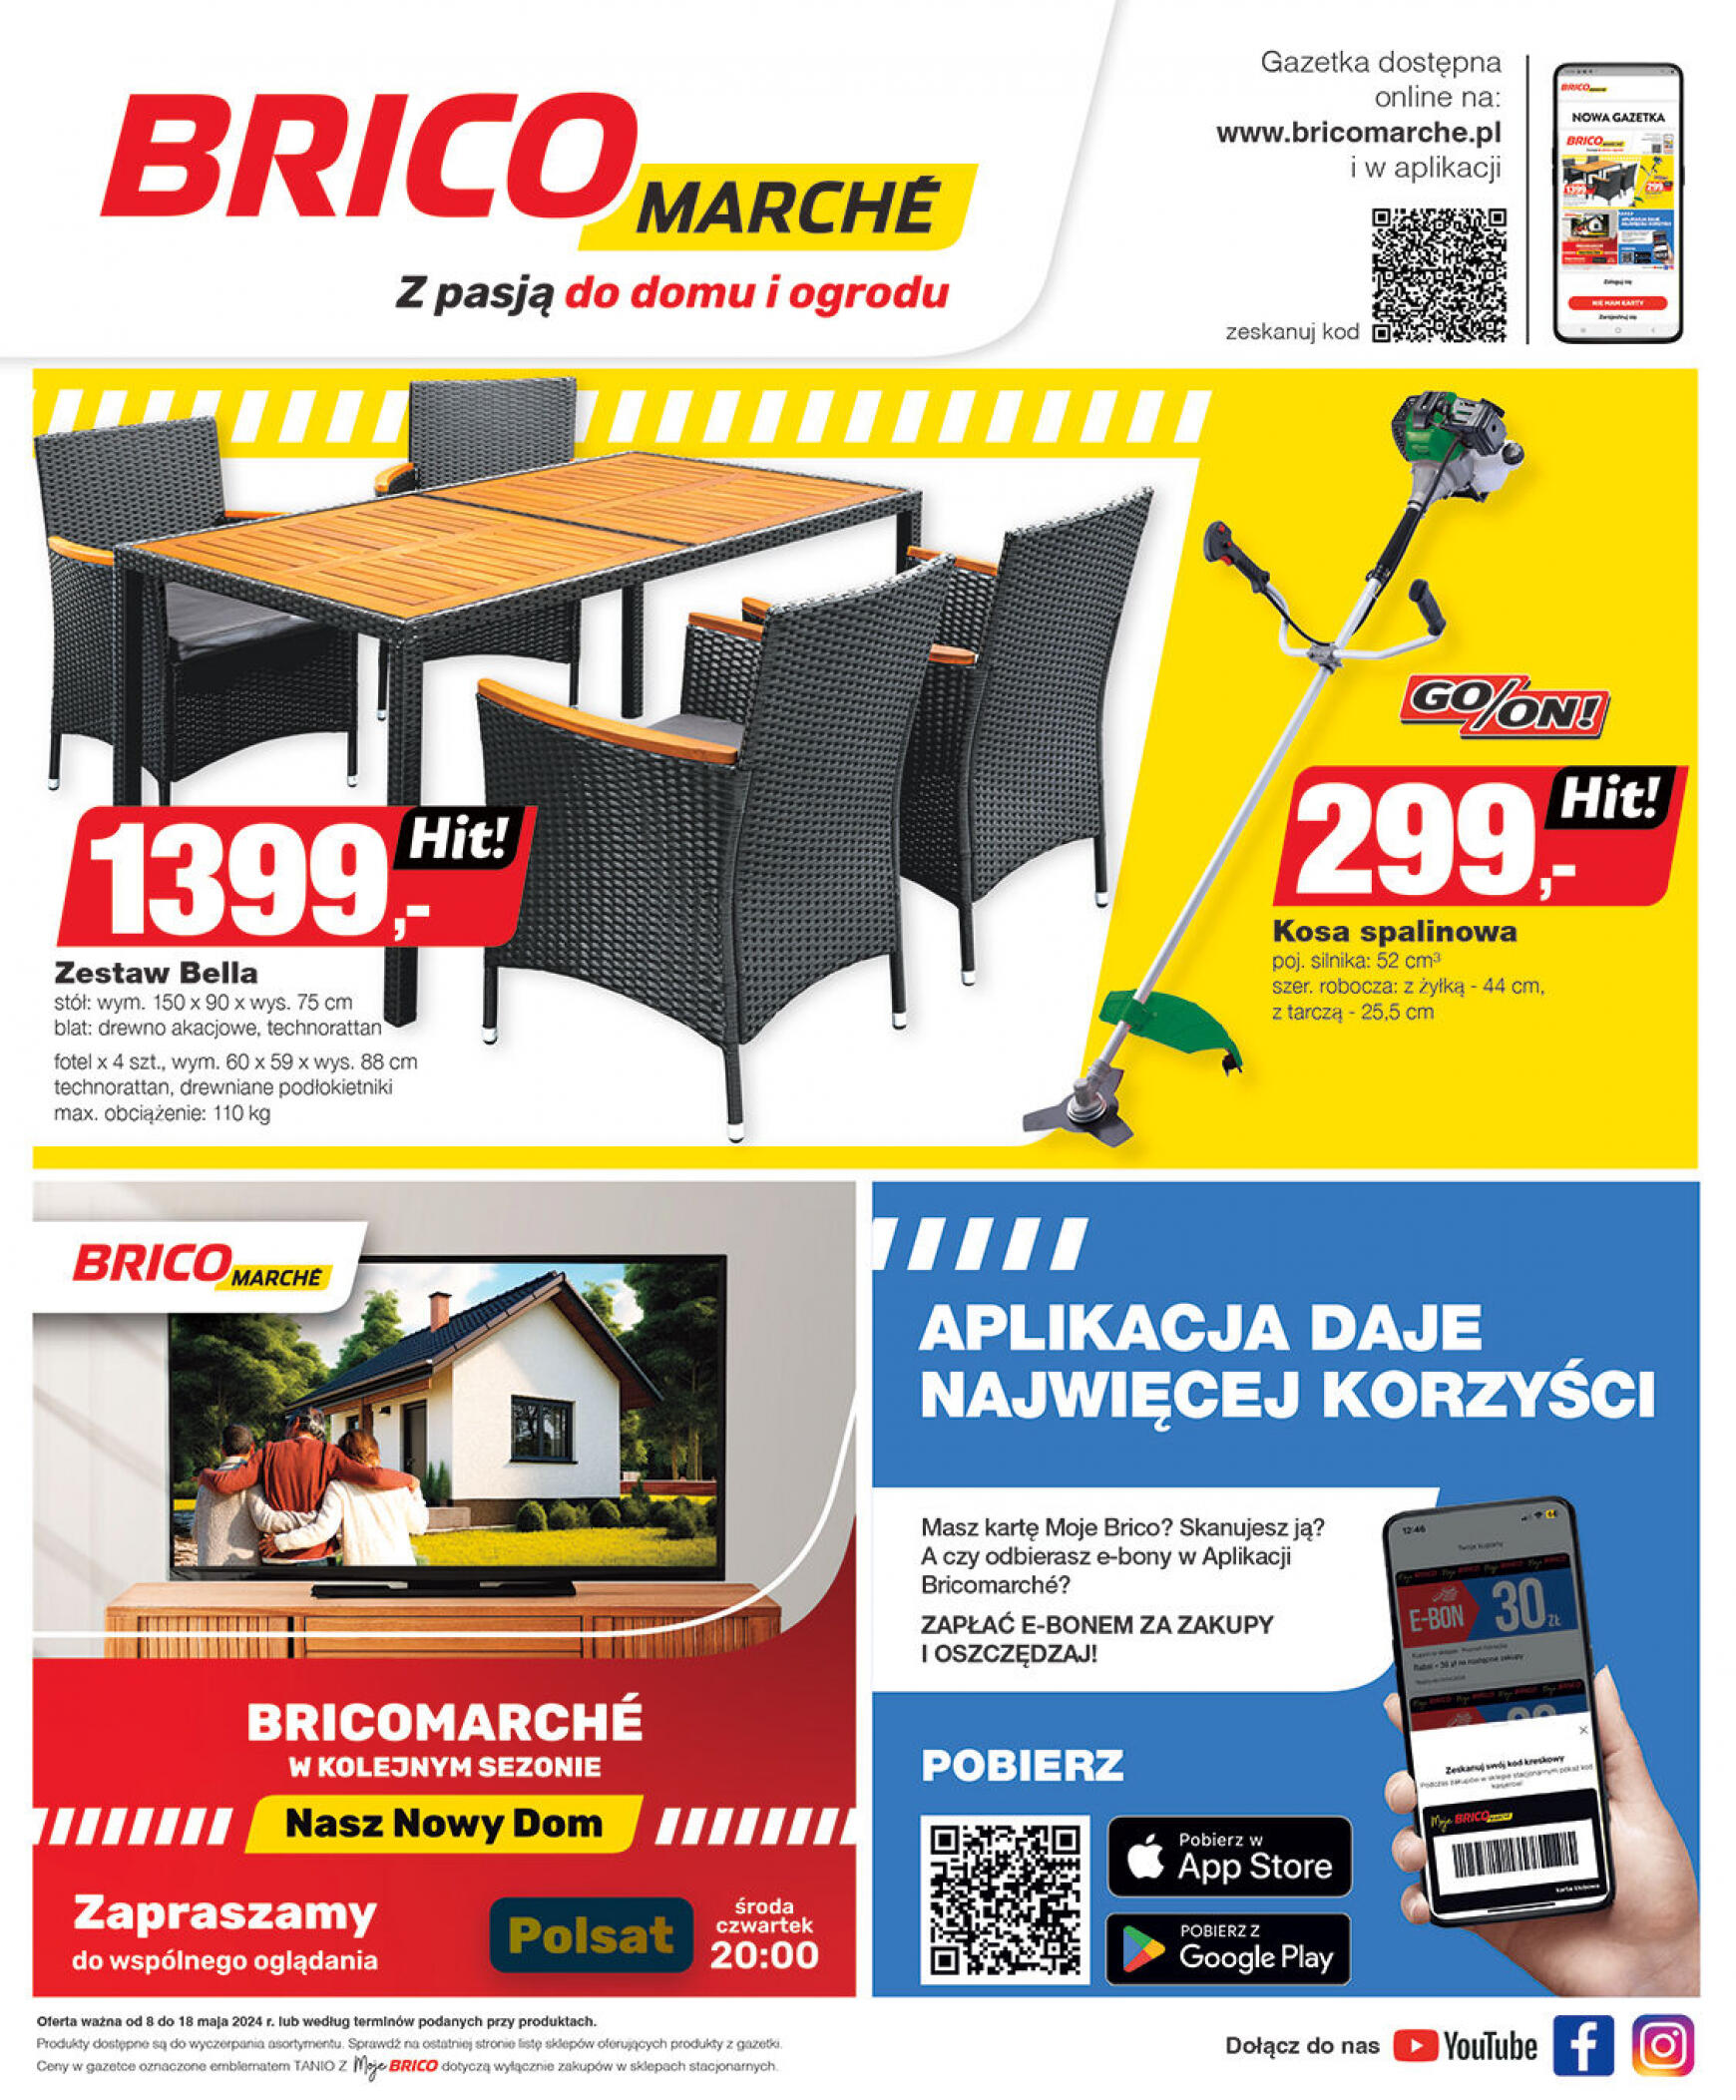 brico-marche - Bricomarché gazetka aktualna ważna od 08.05. - 18.05.